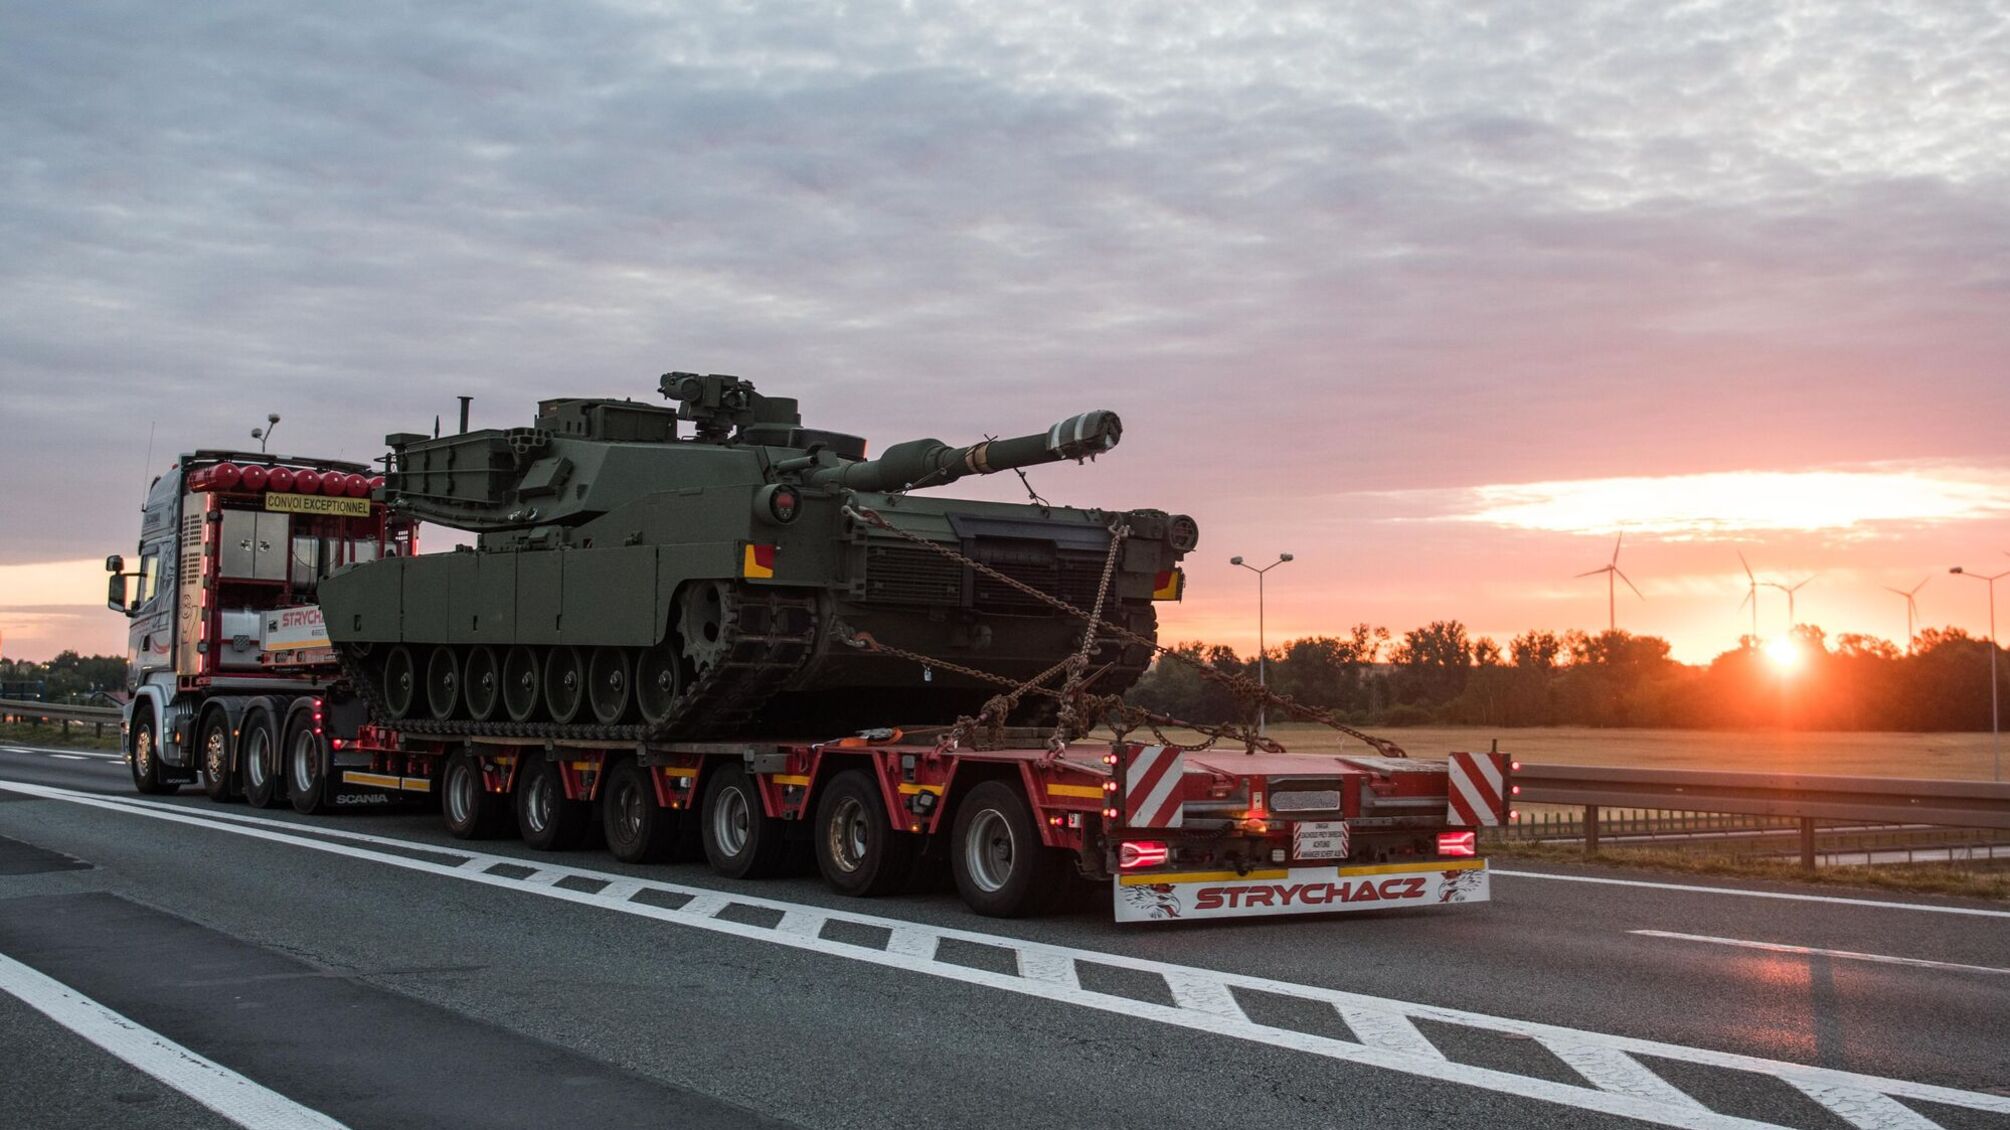 Сім 'Абрамсів' вже у Польщі: країна поповнює арсенал танків після передачі Т-72 Україні